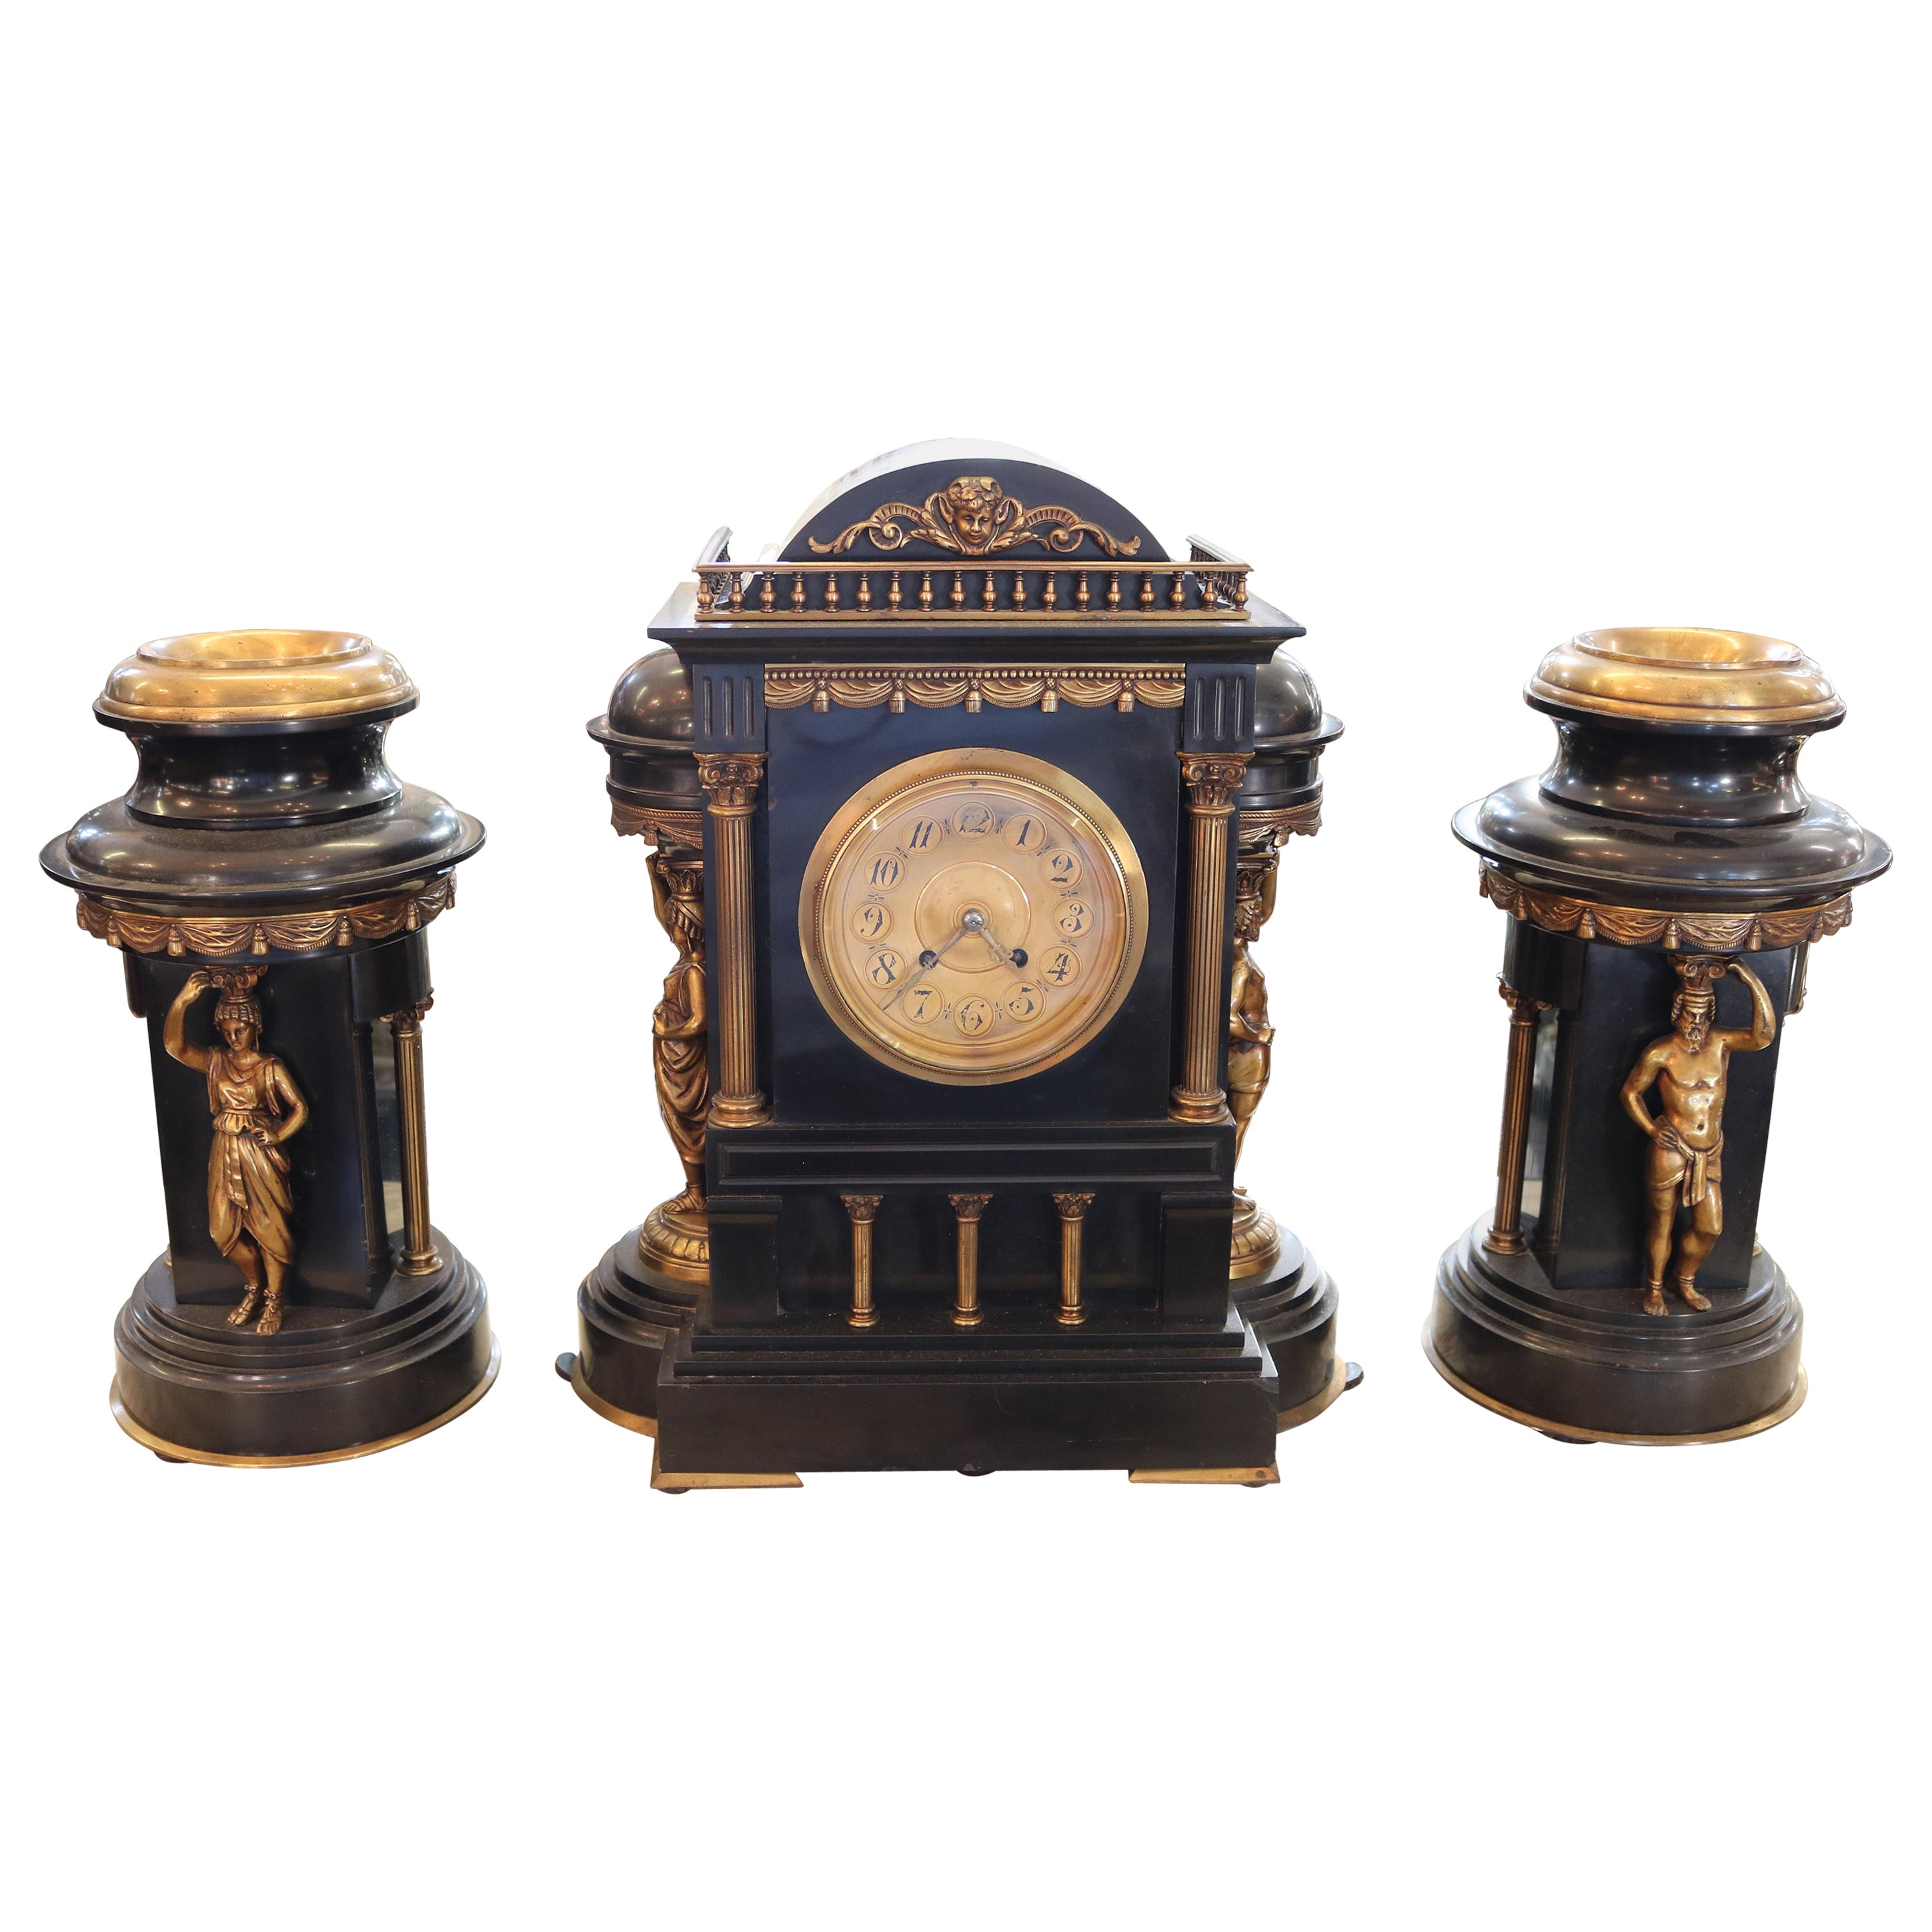 19. Jahrhundert Schiefer Neo Classical Garnitur Uhrensatz  Abmessungen: Uhr - 17" 